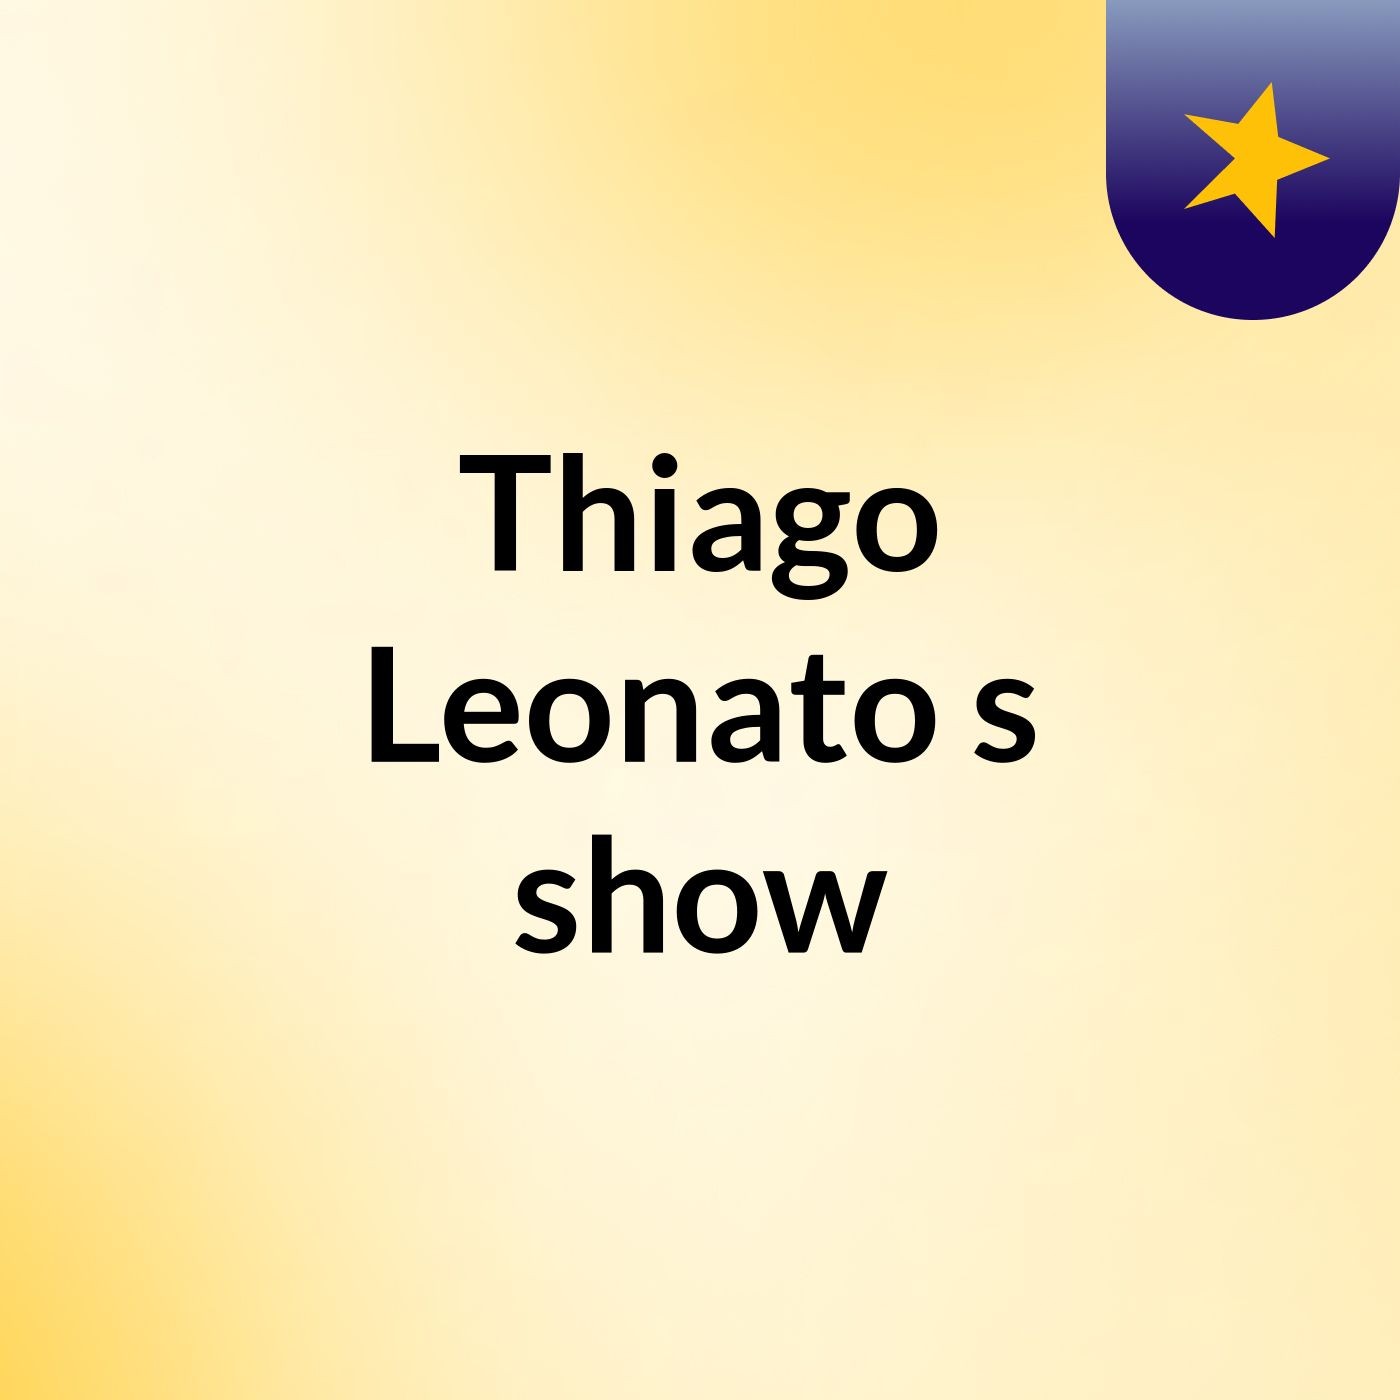 Thiago Leonato's show